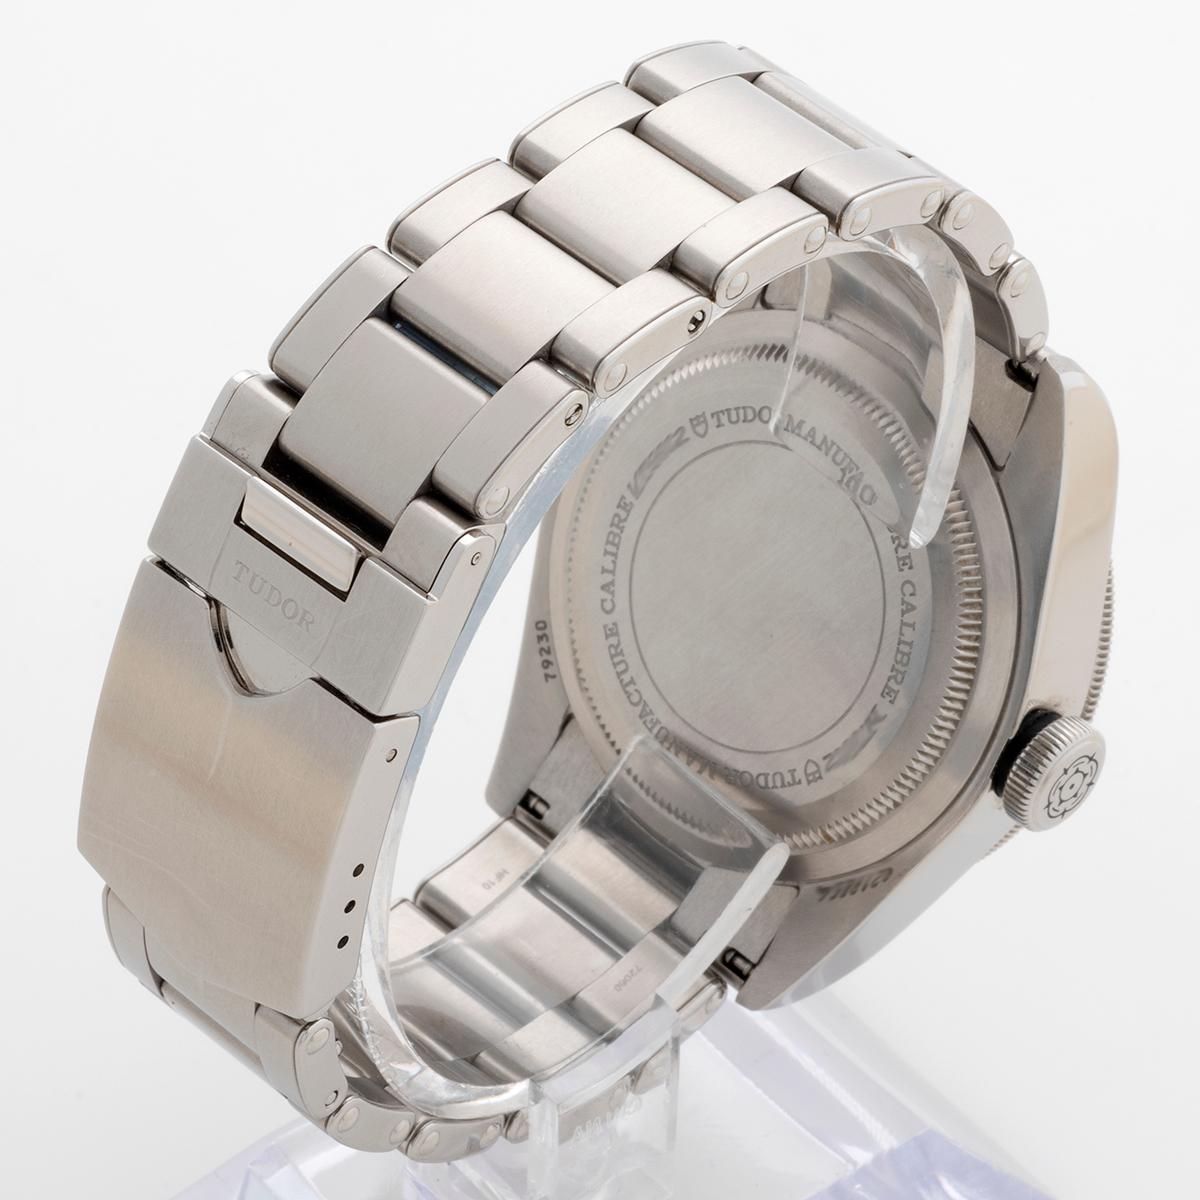 Tudor Black Bay Ref 79230N Wristwatch, 41mm Case, Full Set, Year 2021. For Sale 1